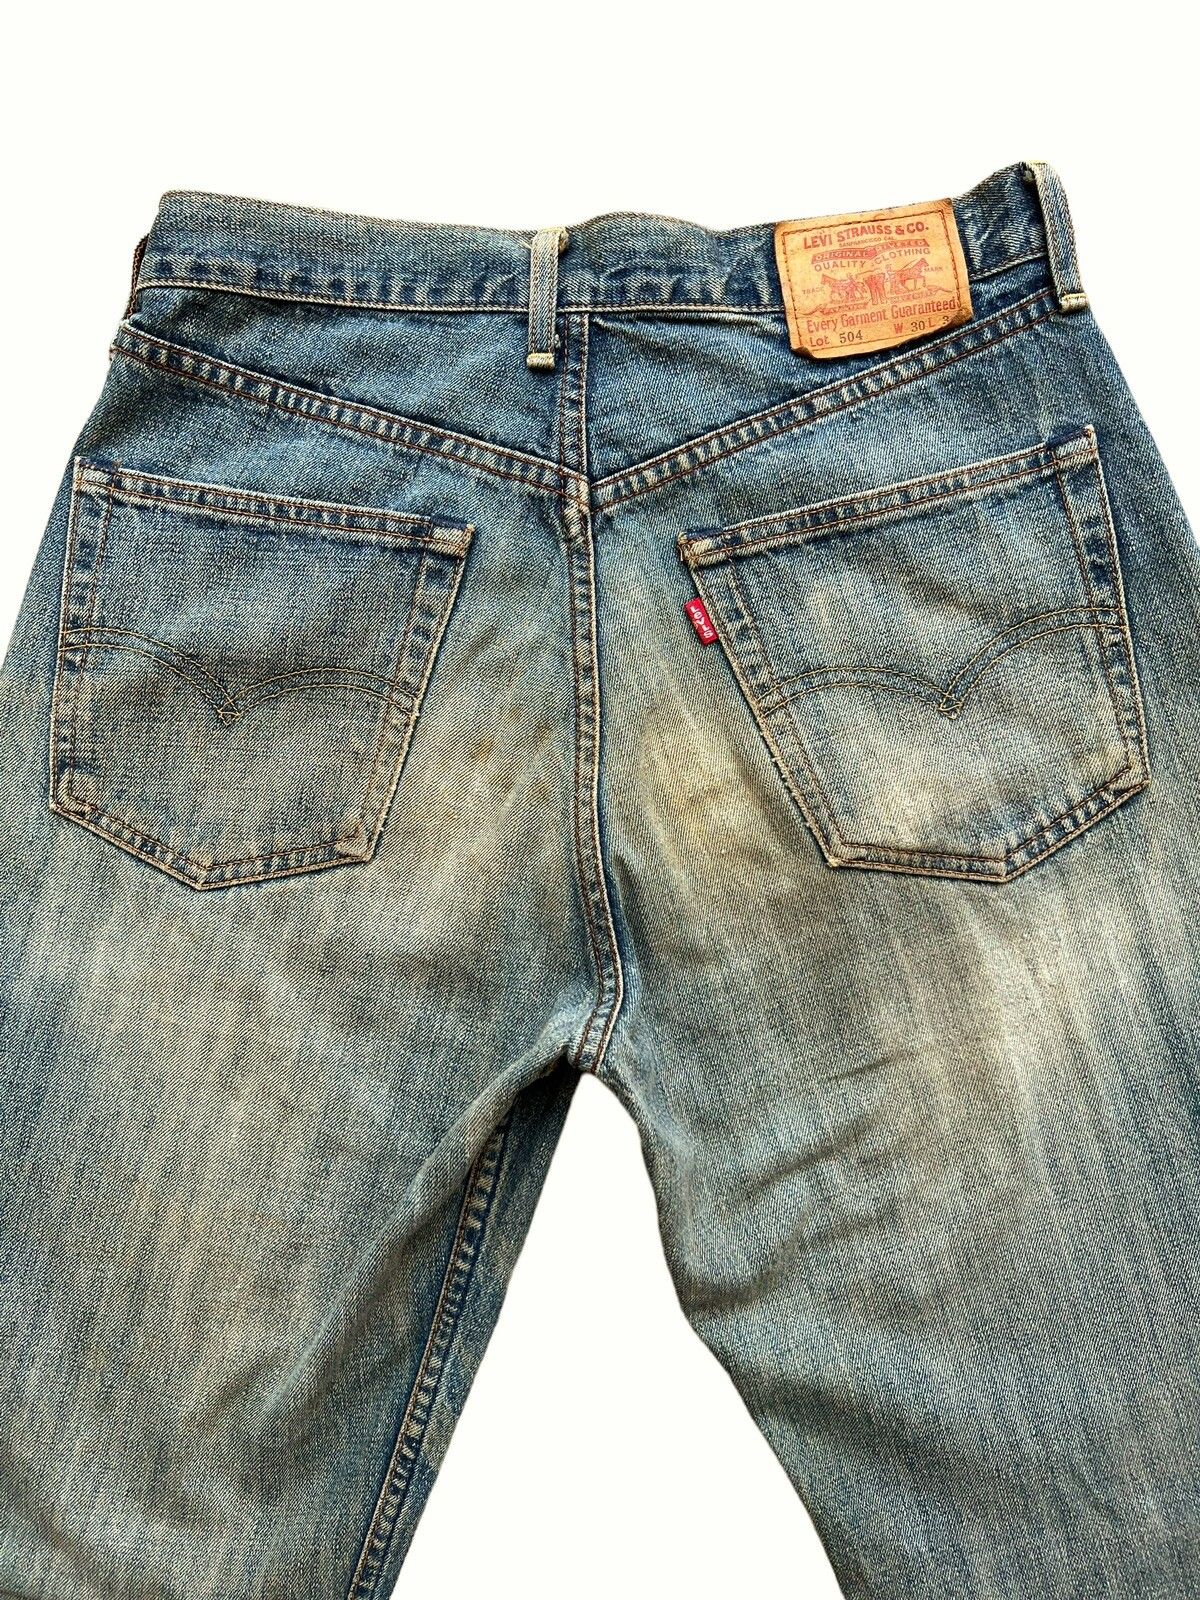 Vintage 90s Levis Distressed Mudwash Patch Denim Jeans 30x35 - 5